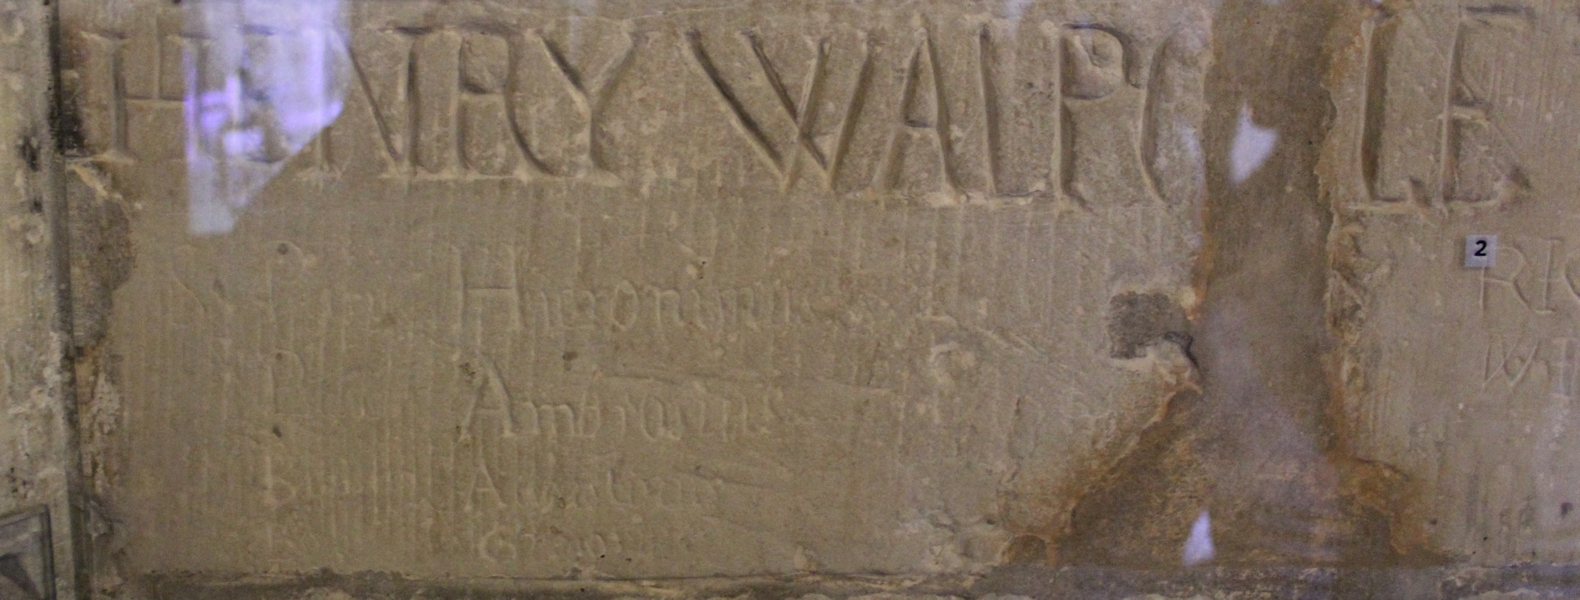 Henry Walpole kritzte seinen Namen während der Haft im Tower in London in die Wand